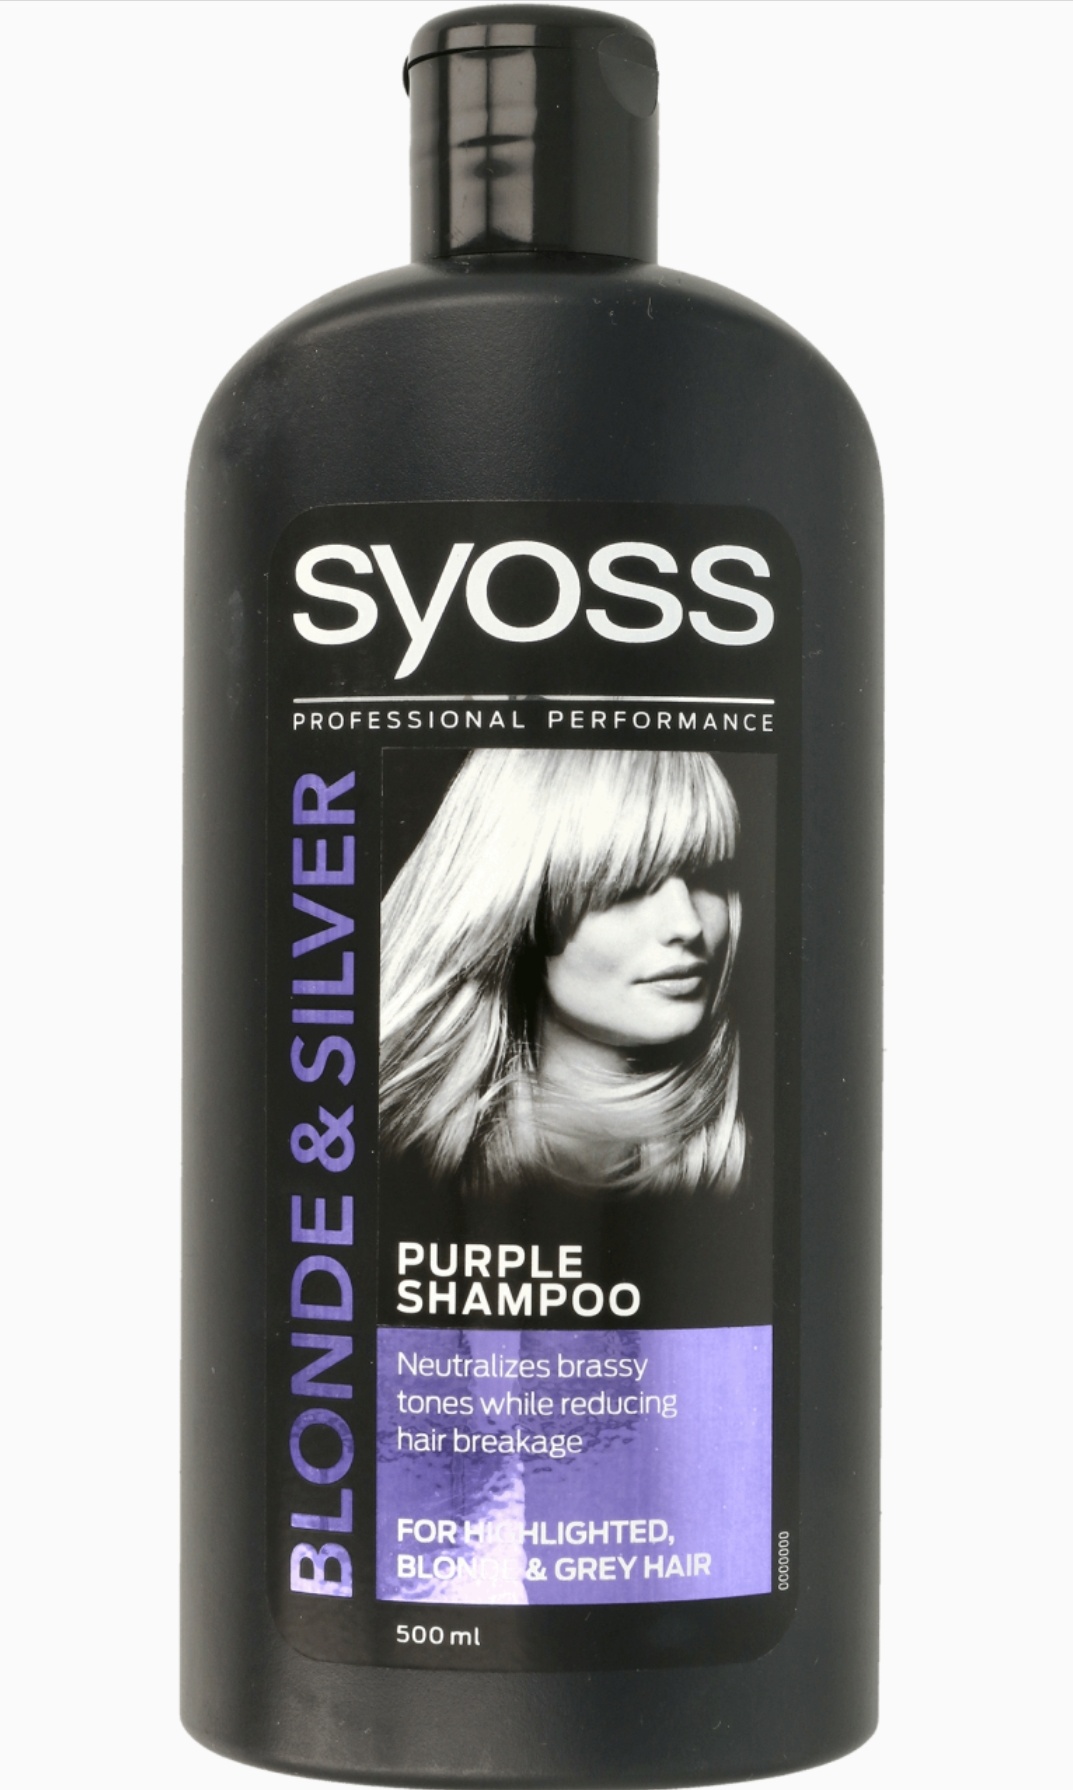 syoss fioletowy szampon